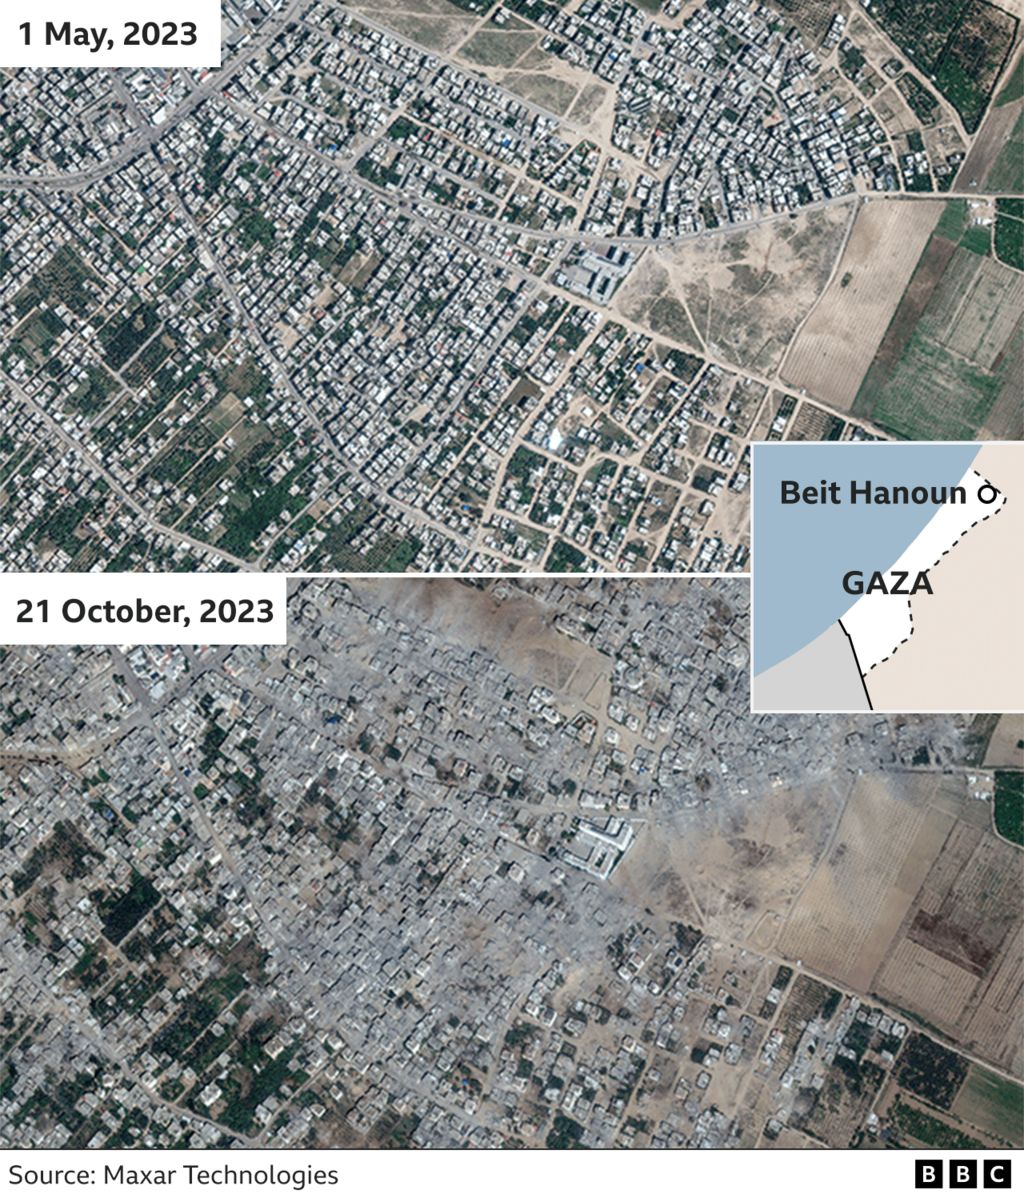 Спутниковые снимки Бейт-Хануна в Газе, показывающие территорию до и после воздушных атак Израиля, разрушивших несколько зданий